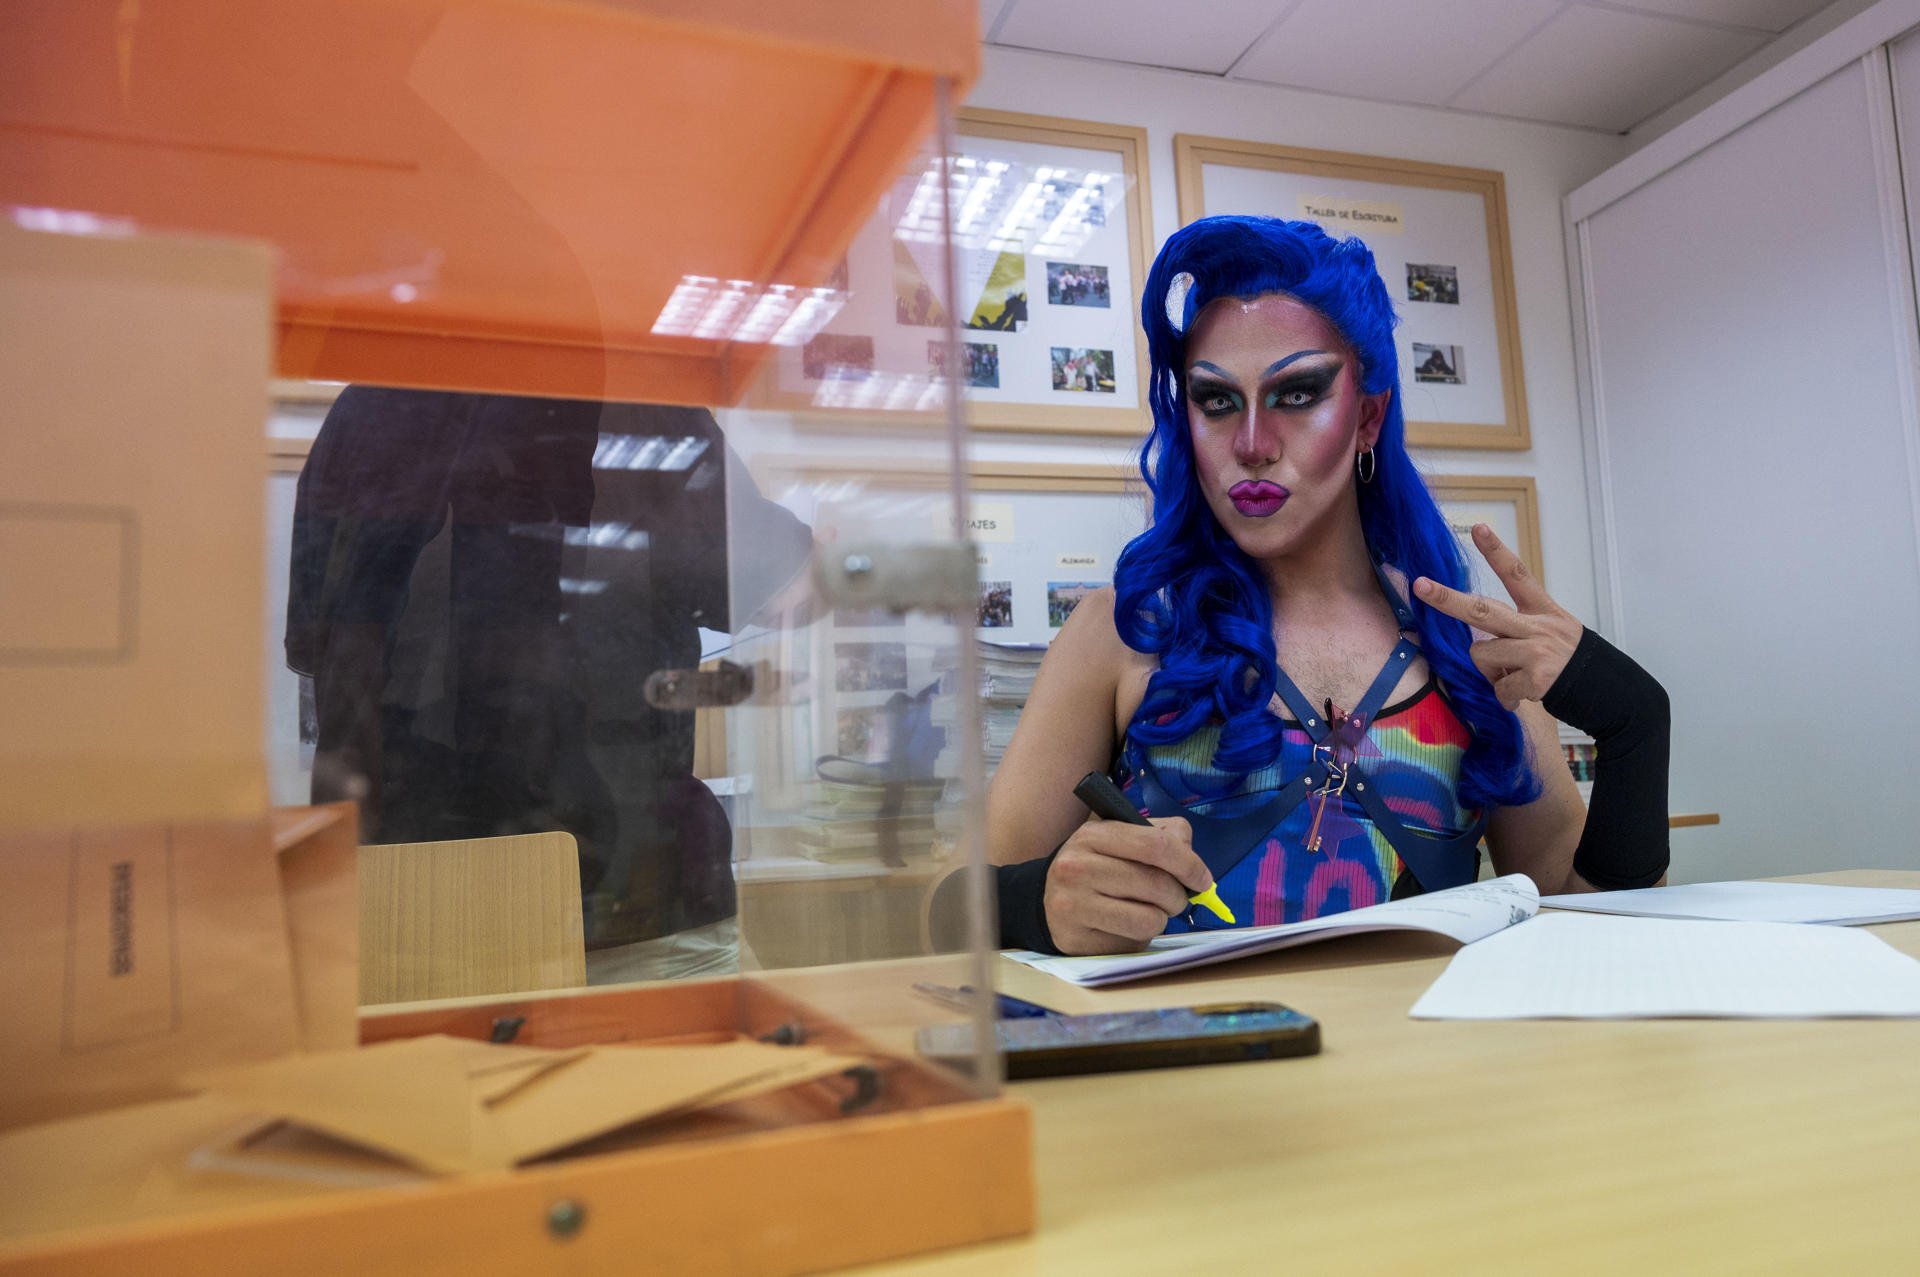 Así se ha presentado una conocida ‘drag queen’ a una mesa electoral